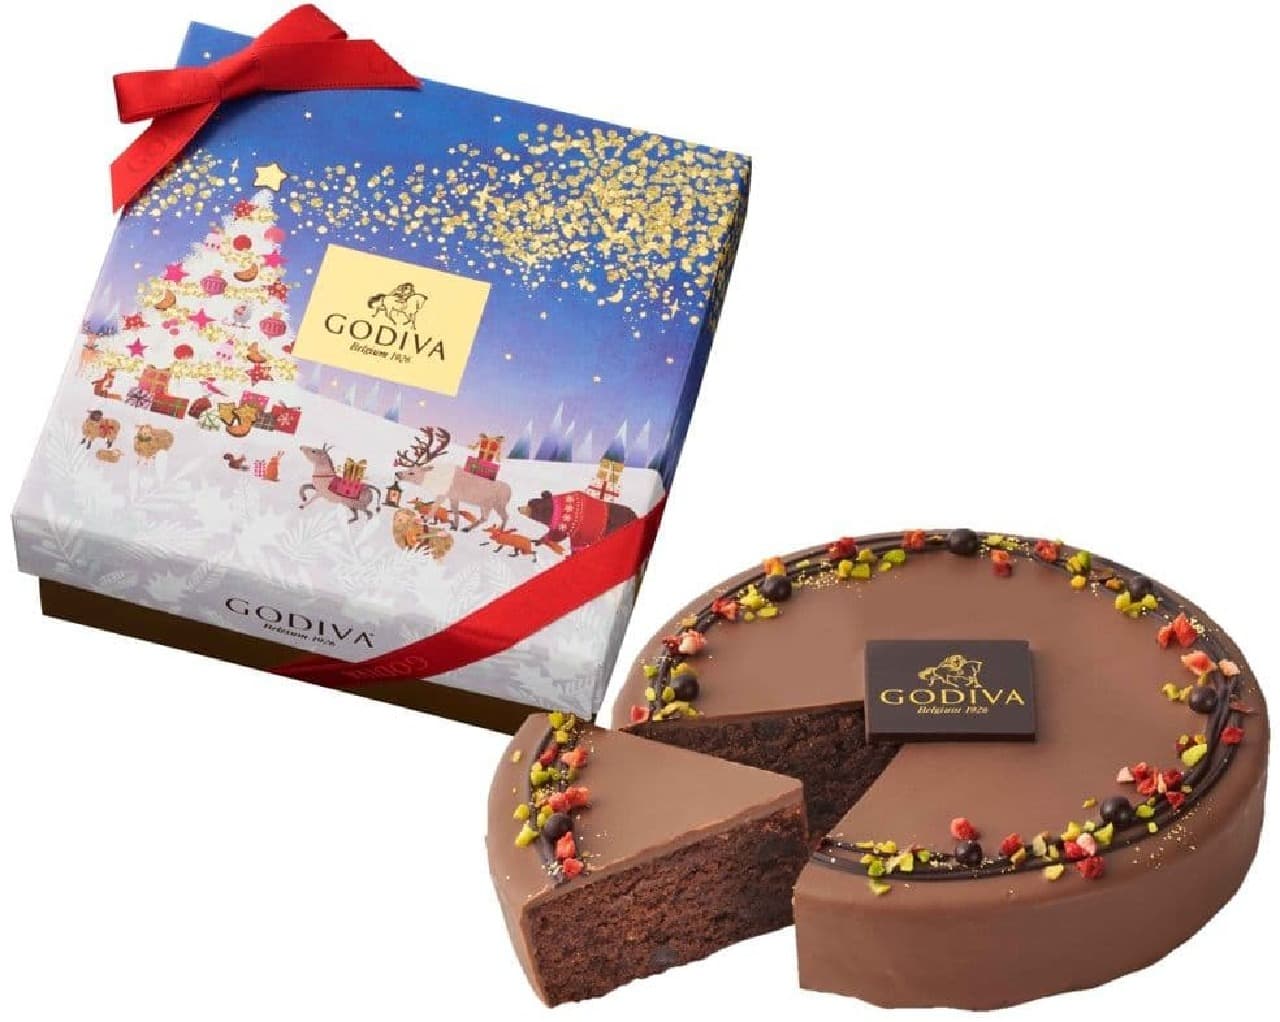 Godiva "Christmas Gateau au Chocolat